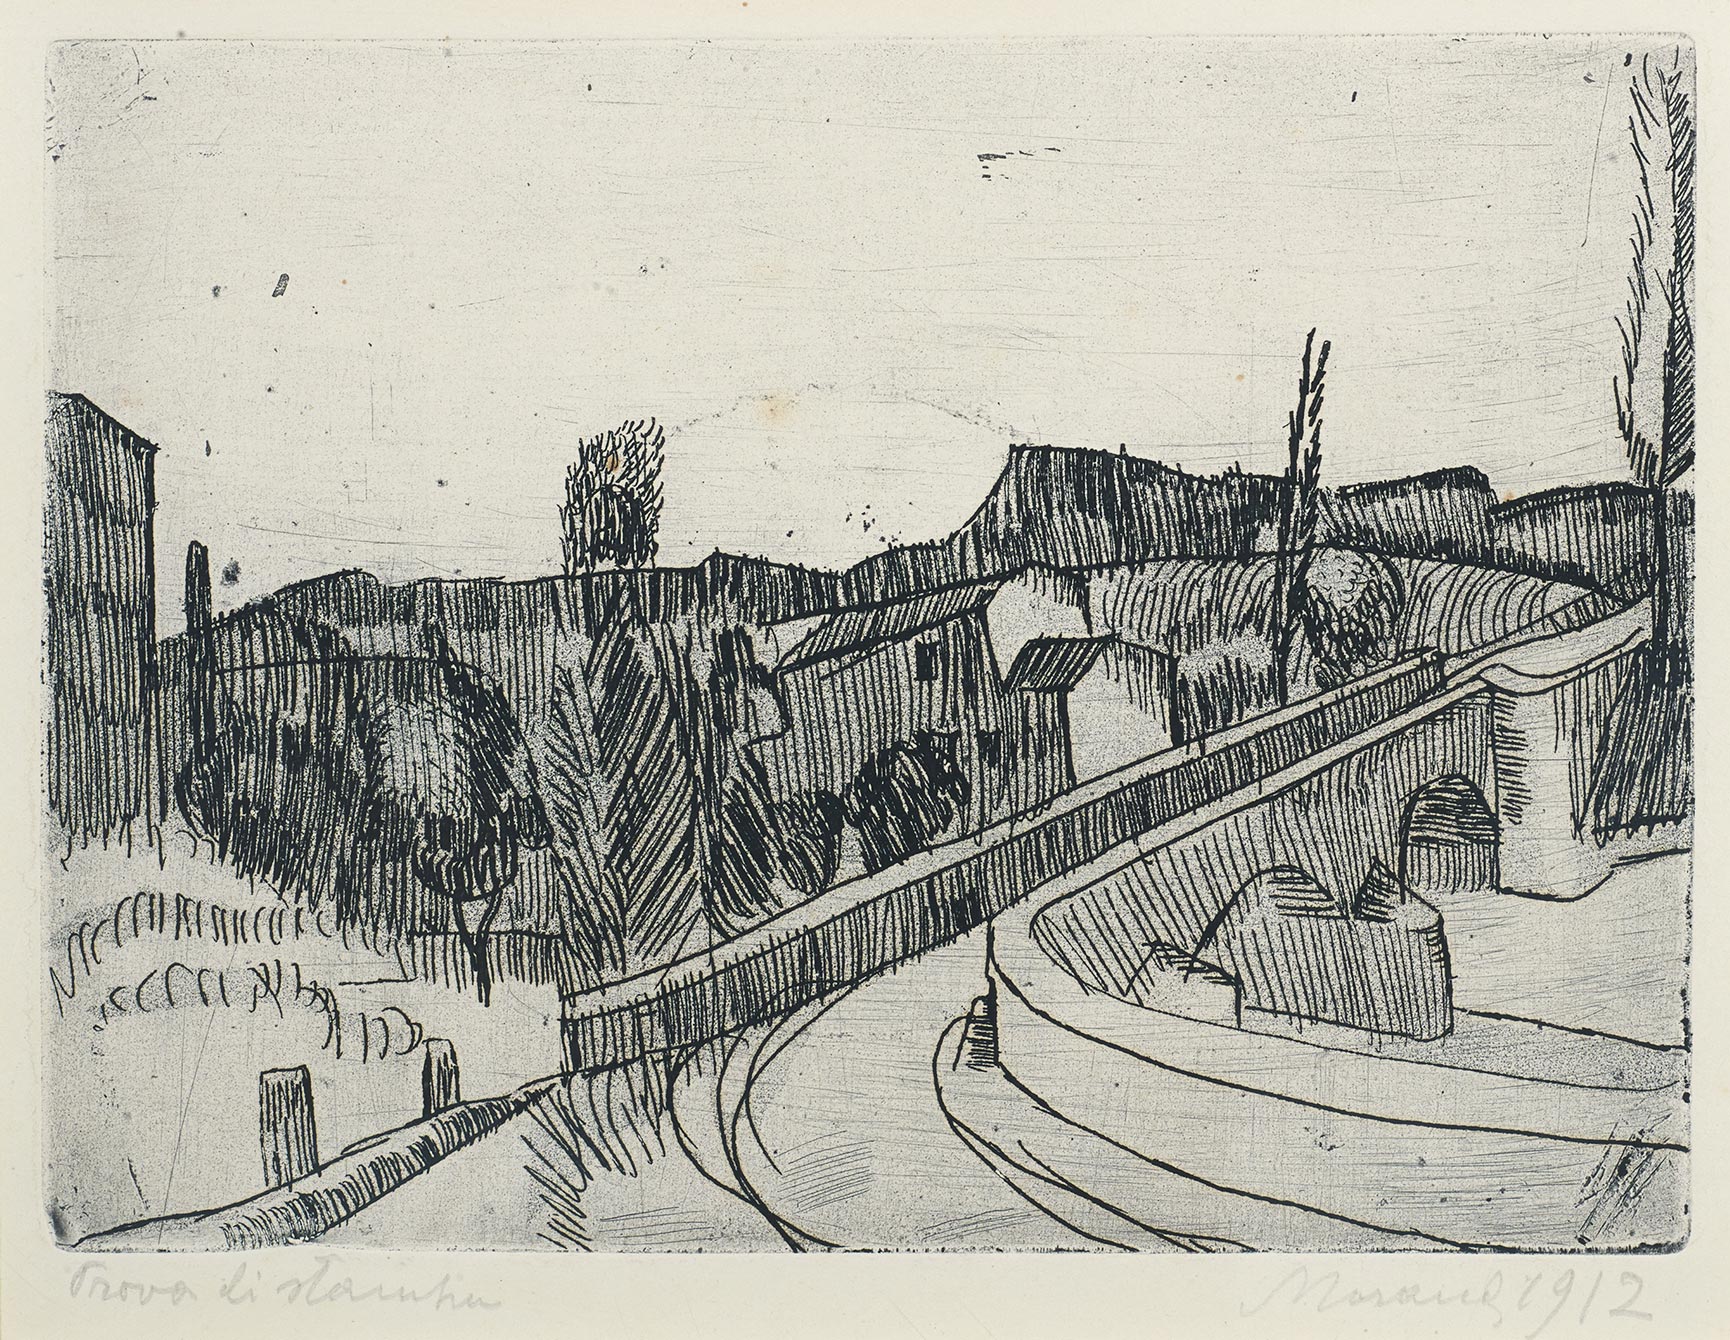 Giorgio Morandi, The Bridge over the Savena at Bologna, 1912